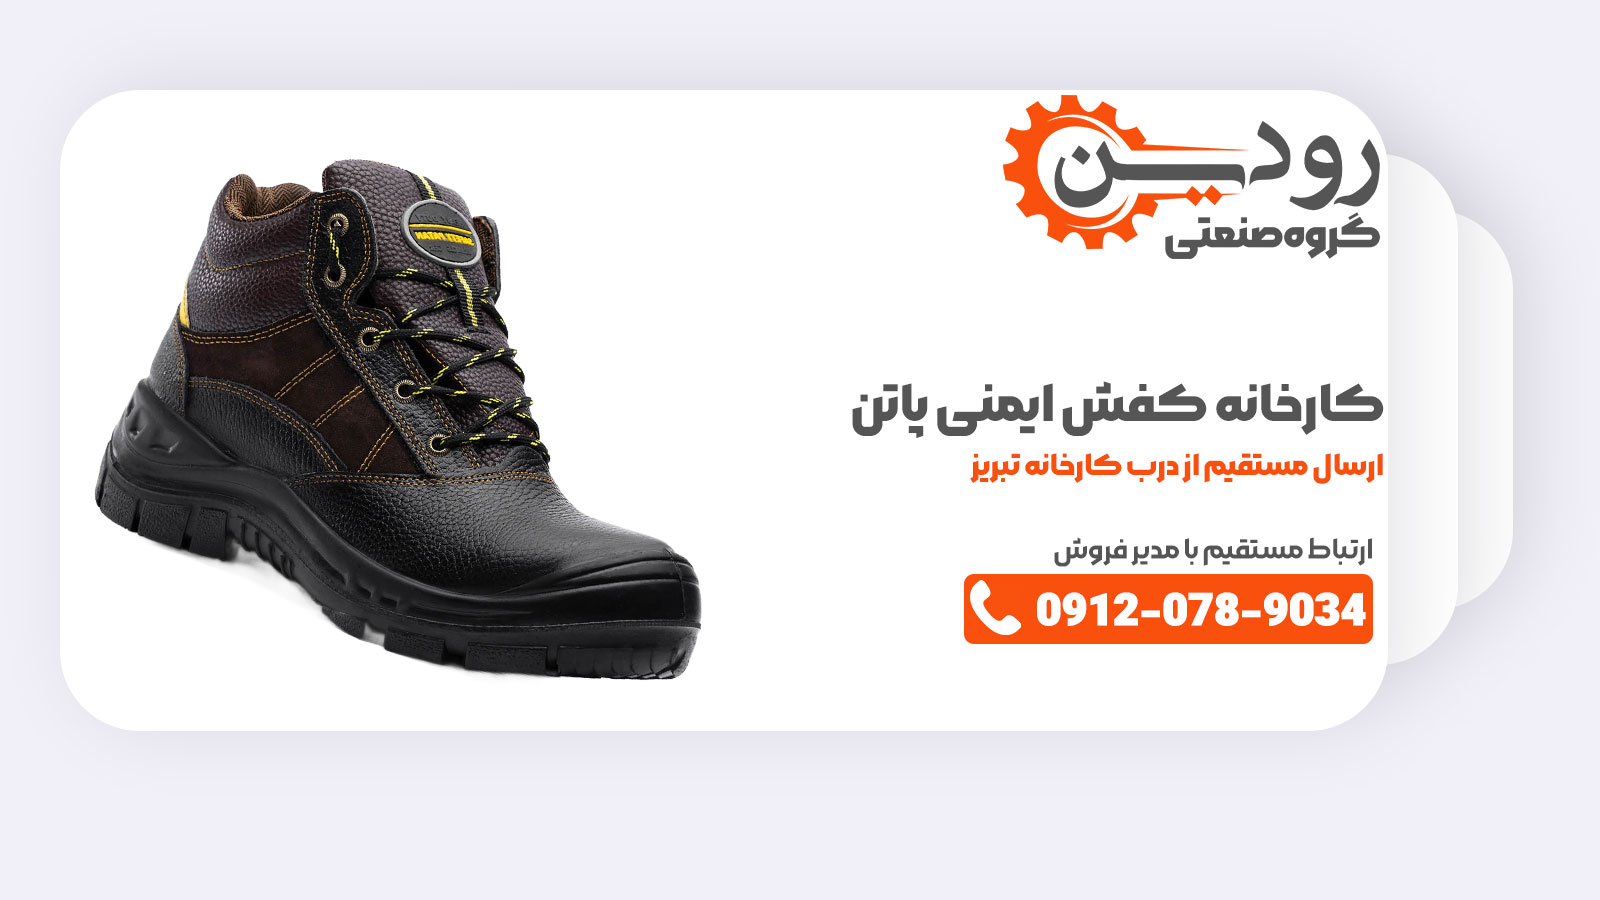 یکی از برندهای بزرگ، پاتن می باشد که کارخانه تولید کفش ایمنی آن در تبریز مشغول به فعالیت است.